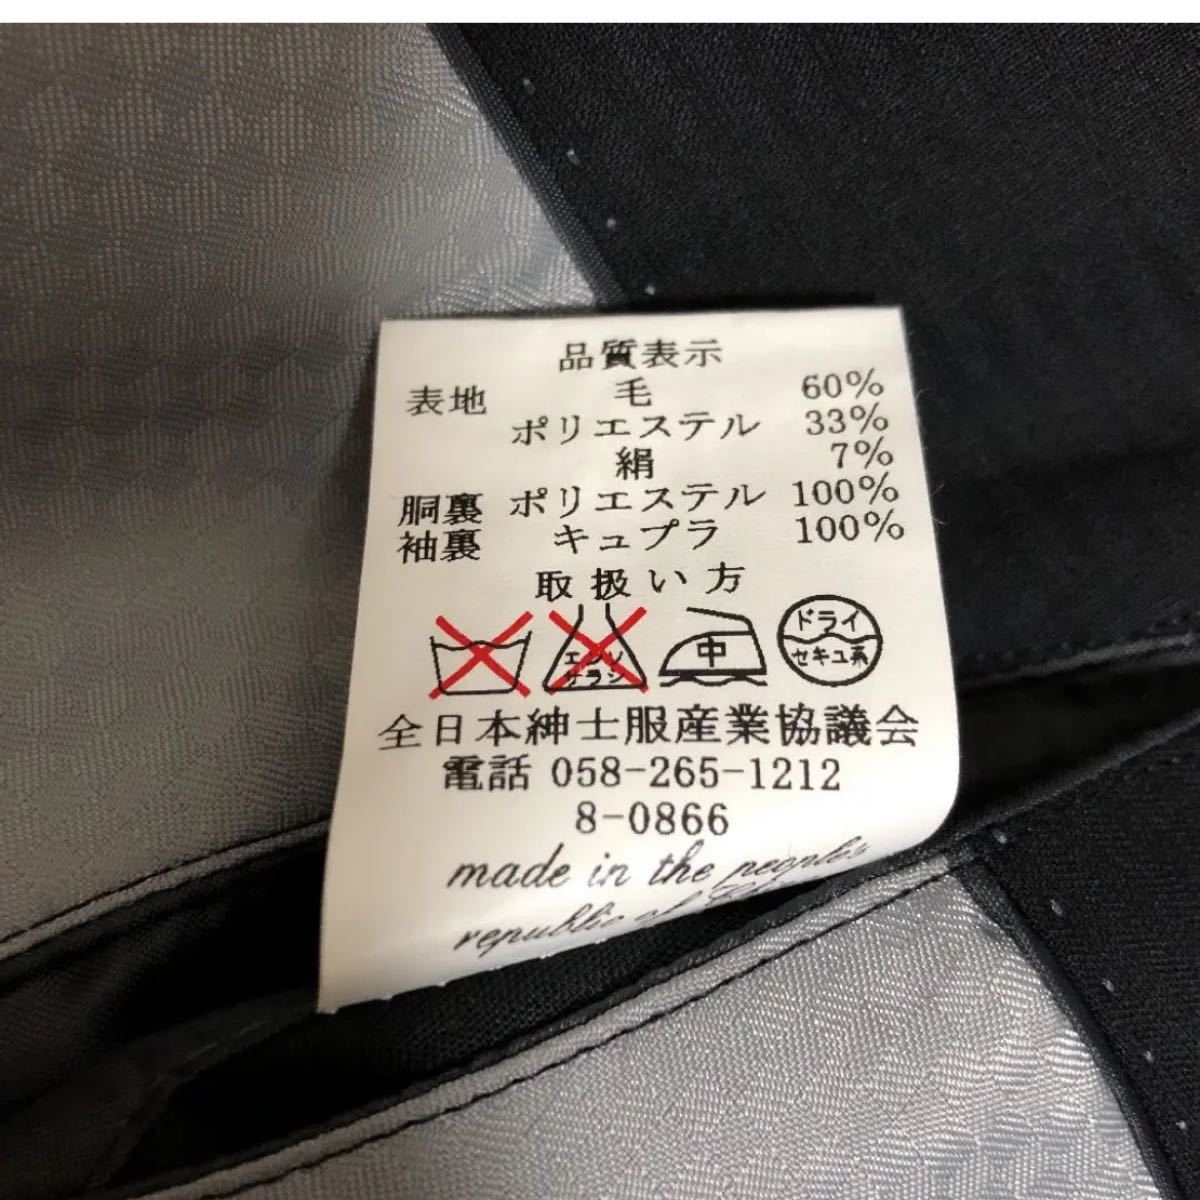 【新品未使用サンプル品】メンズ シルク混 スーツ Y6 黒 ブラック